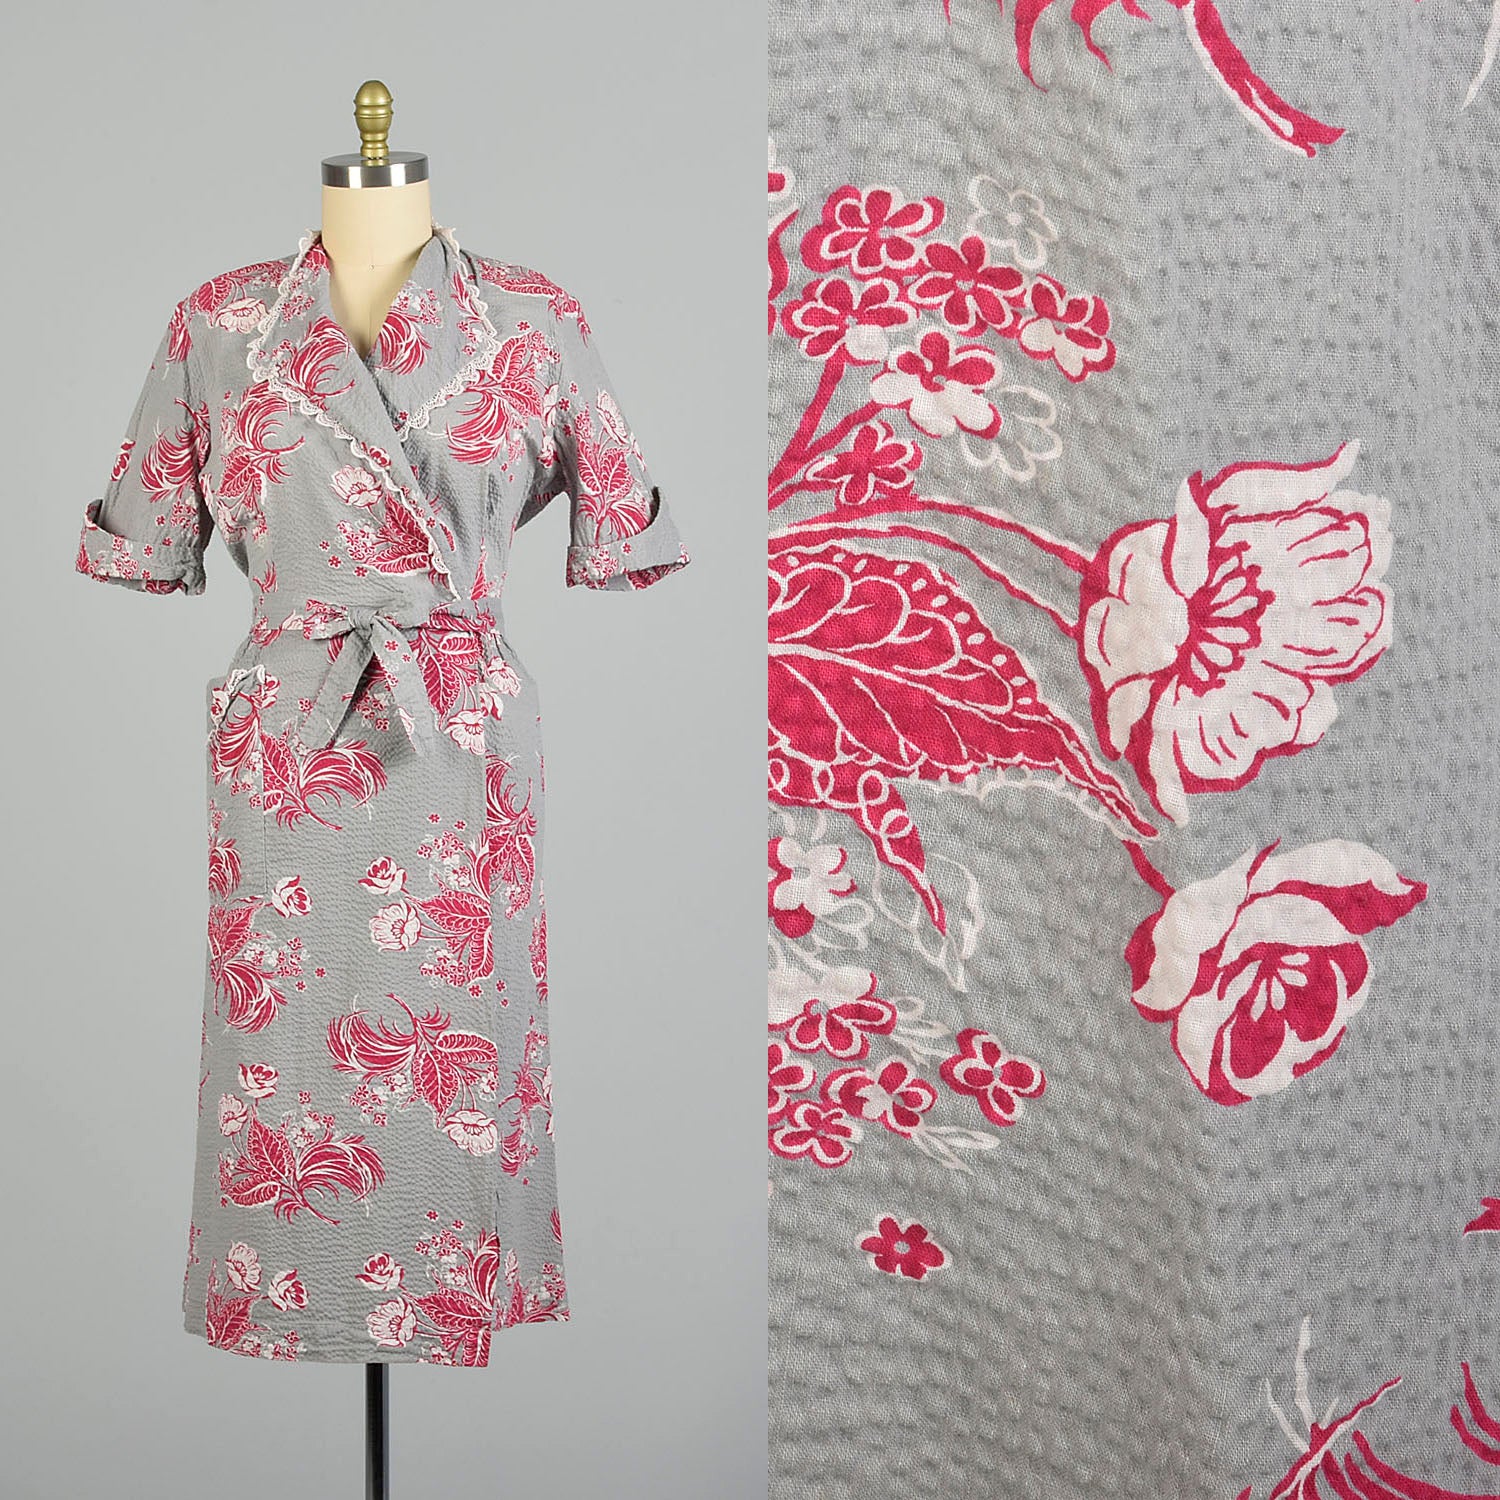 XXL 1950s Seersucker Wrap Dress Novelty Print Grey Hot Pink Casual Summer Day Dress House Dress